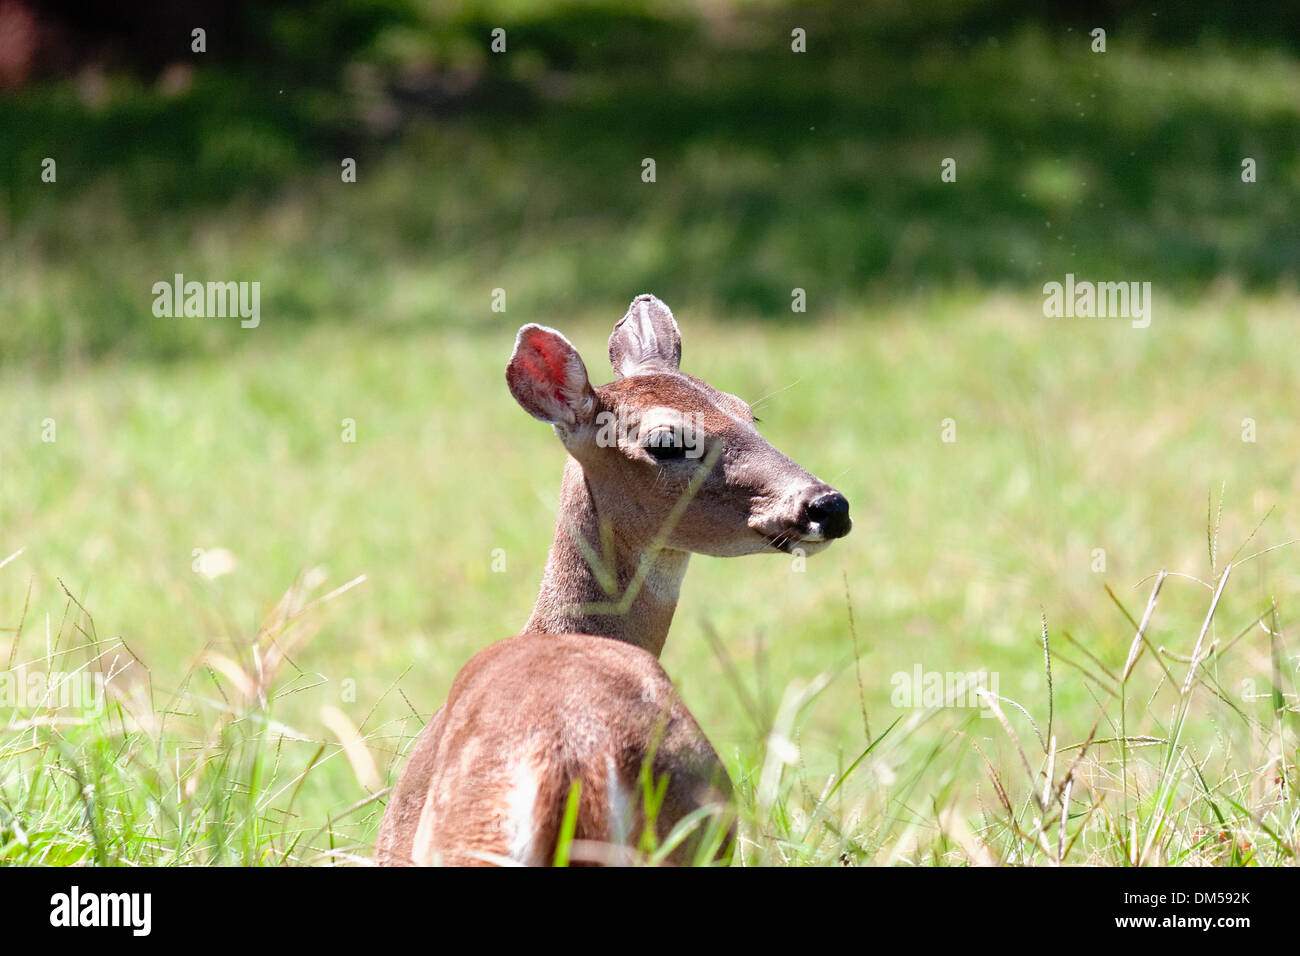 deer closeup Stock Photo